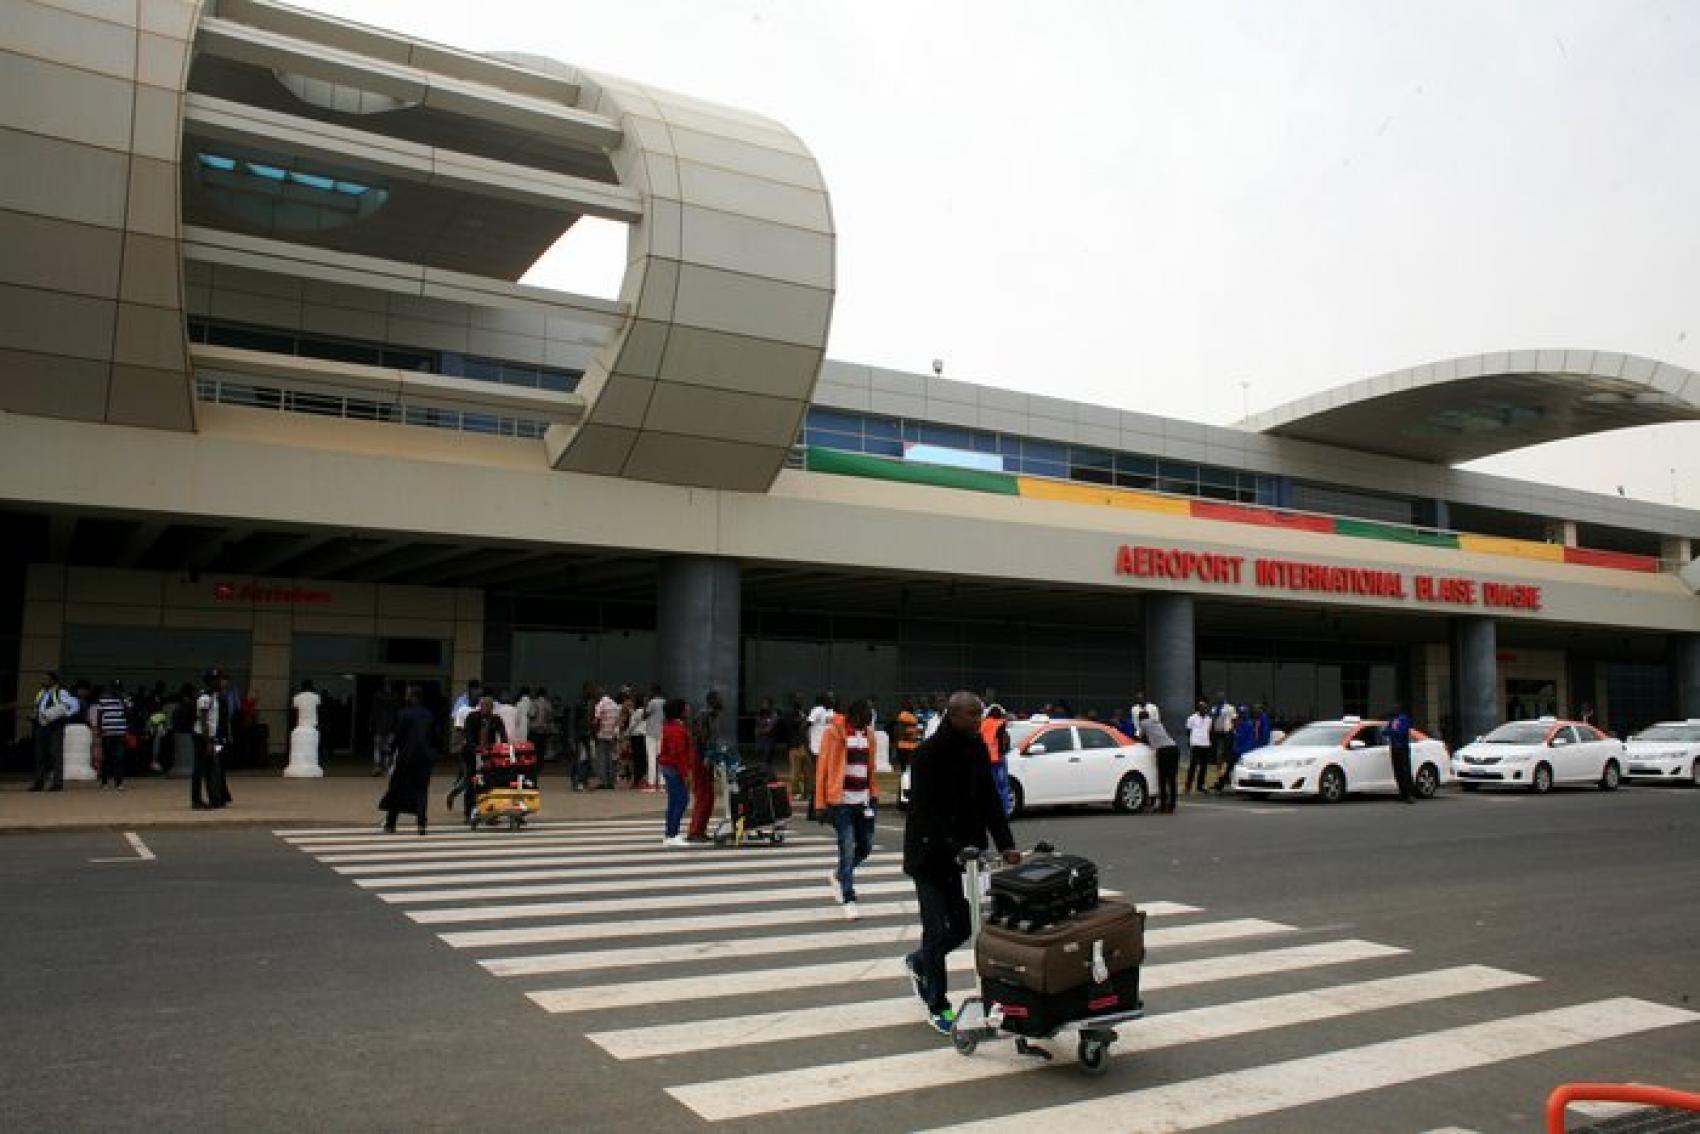 Aéroport Dakar: Des dispositions prises pour minimiser l'impact du manque de kérosène (officiel )

